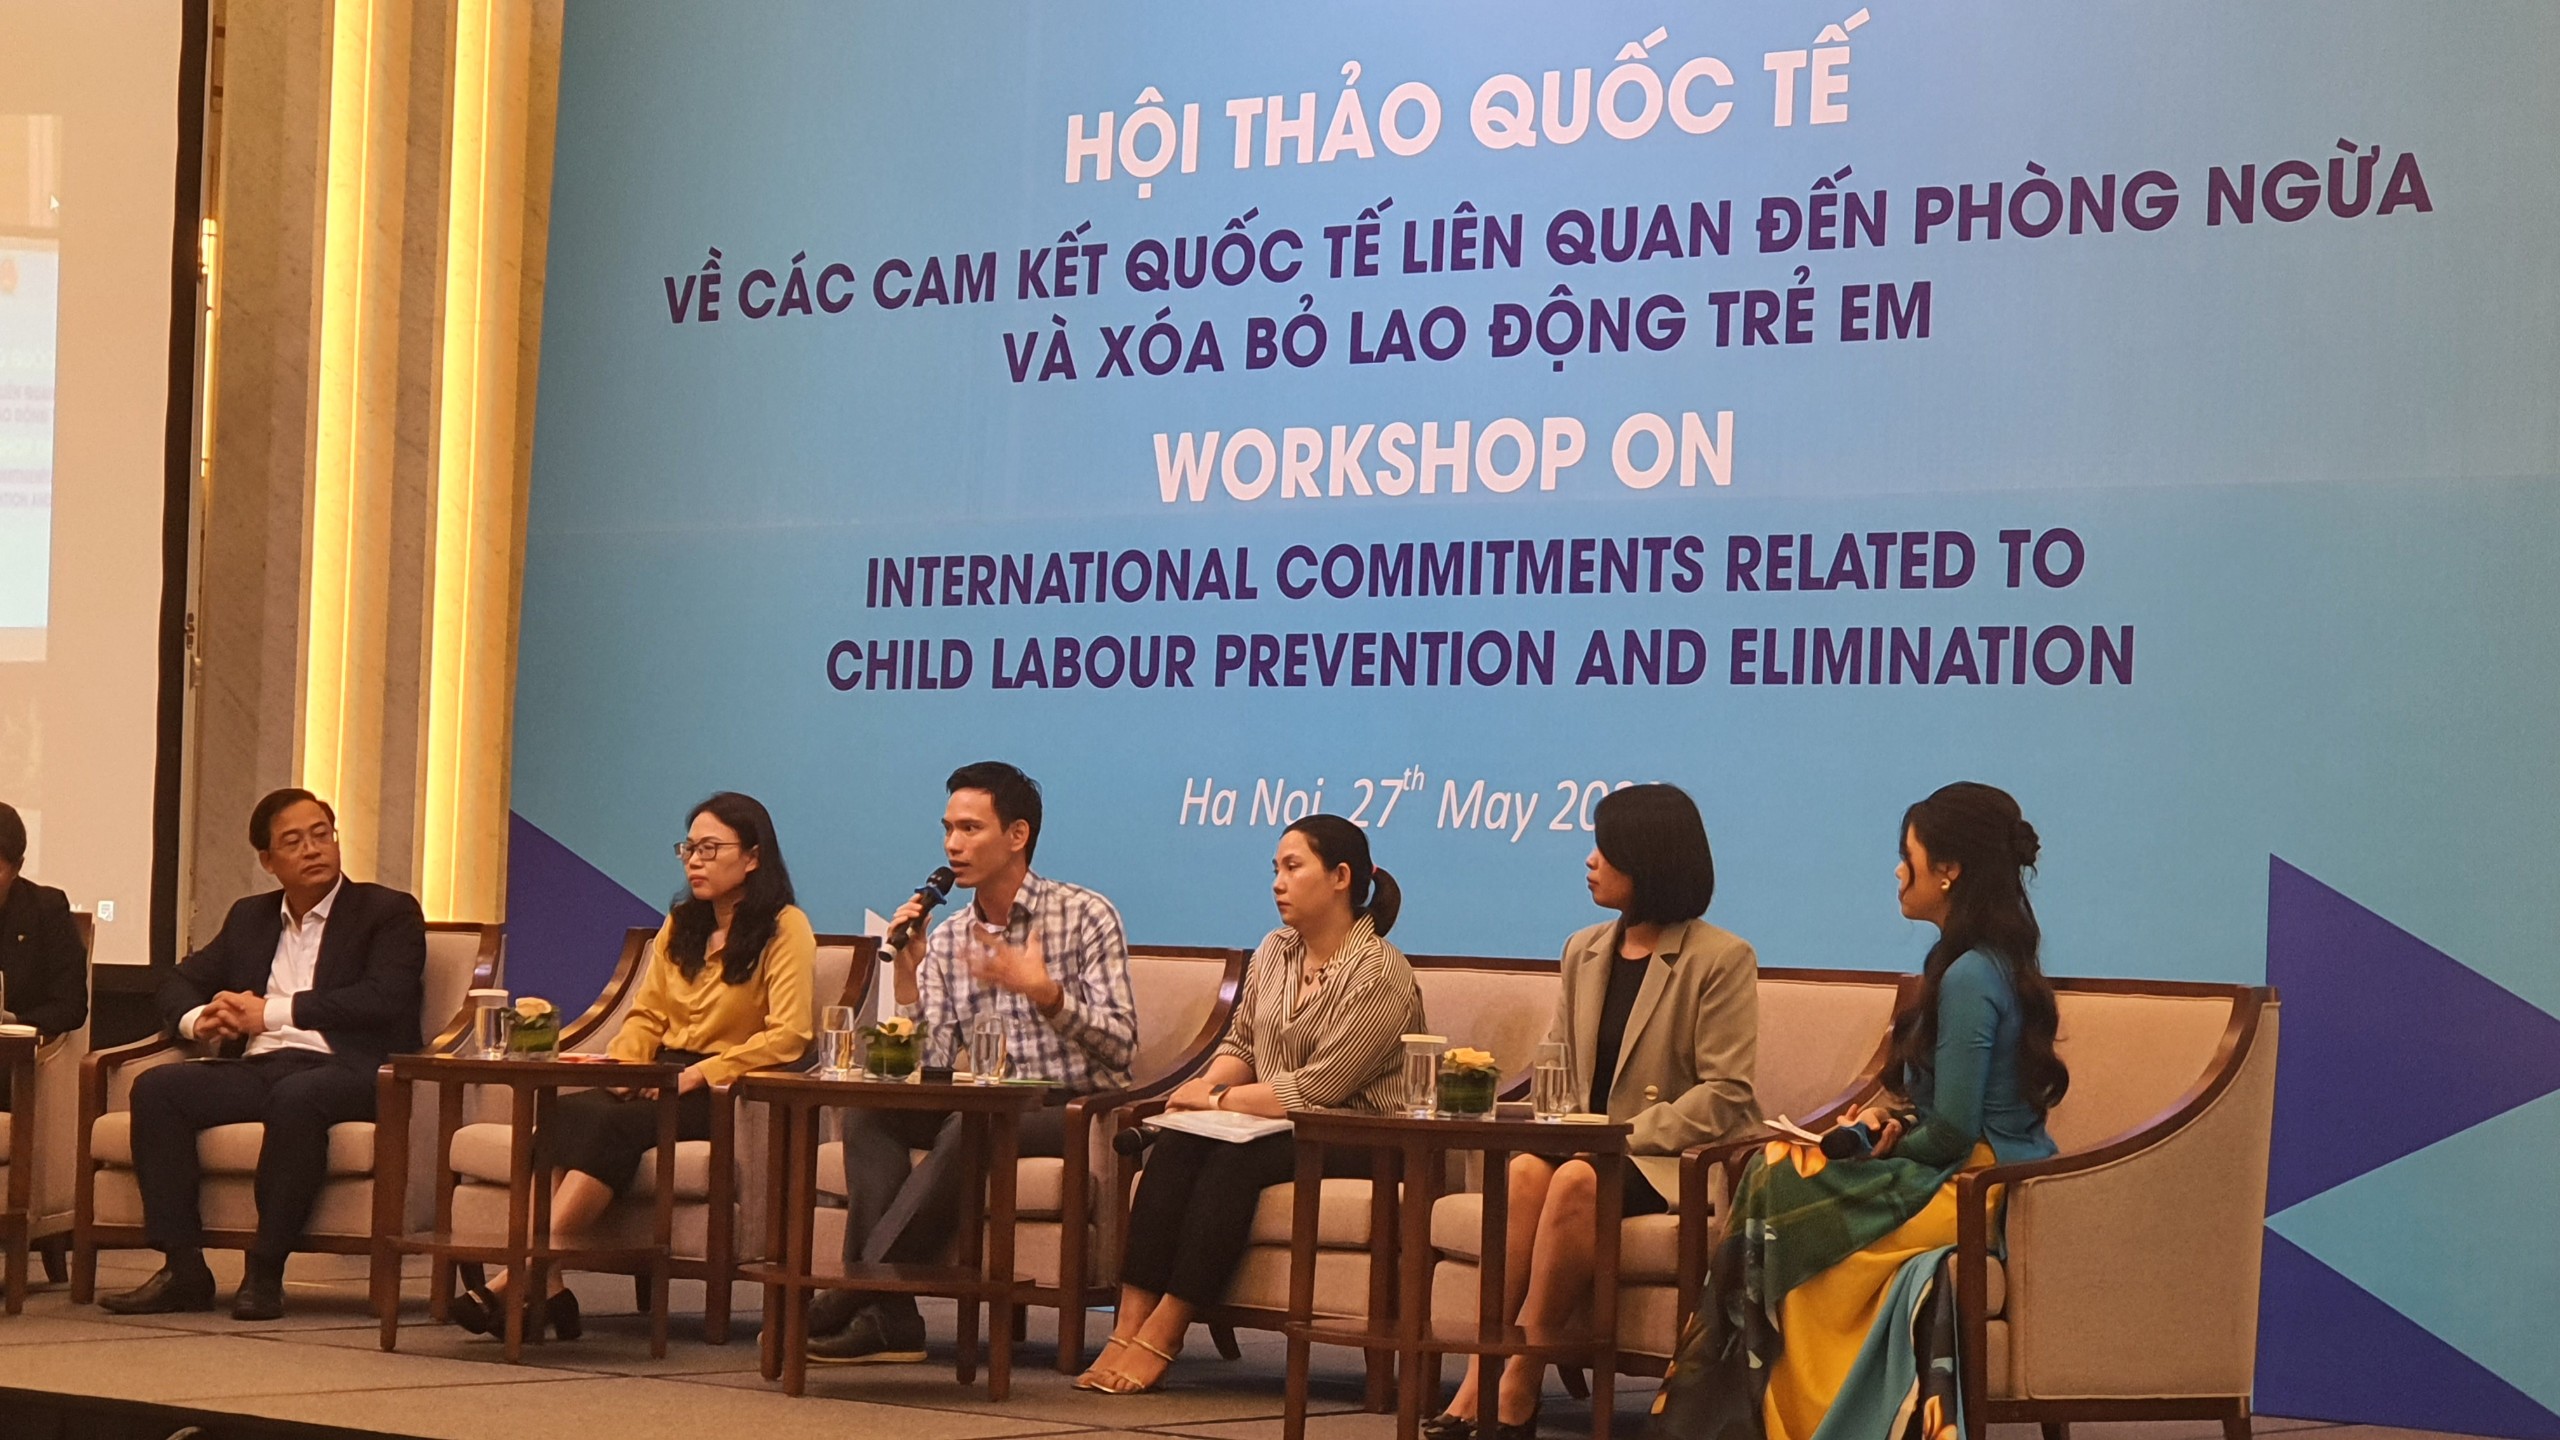 Manpower Group Việt Nam Chung Tay Phòng Ngừa Và Xóa Bỏ Lao động Trẻ Em 4